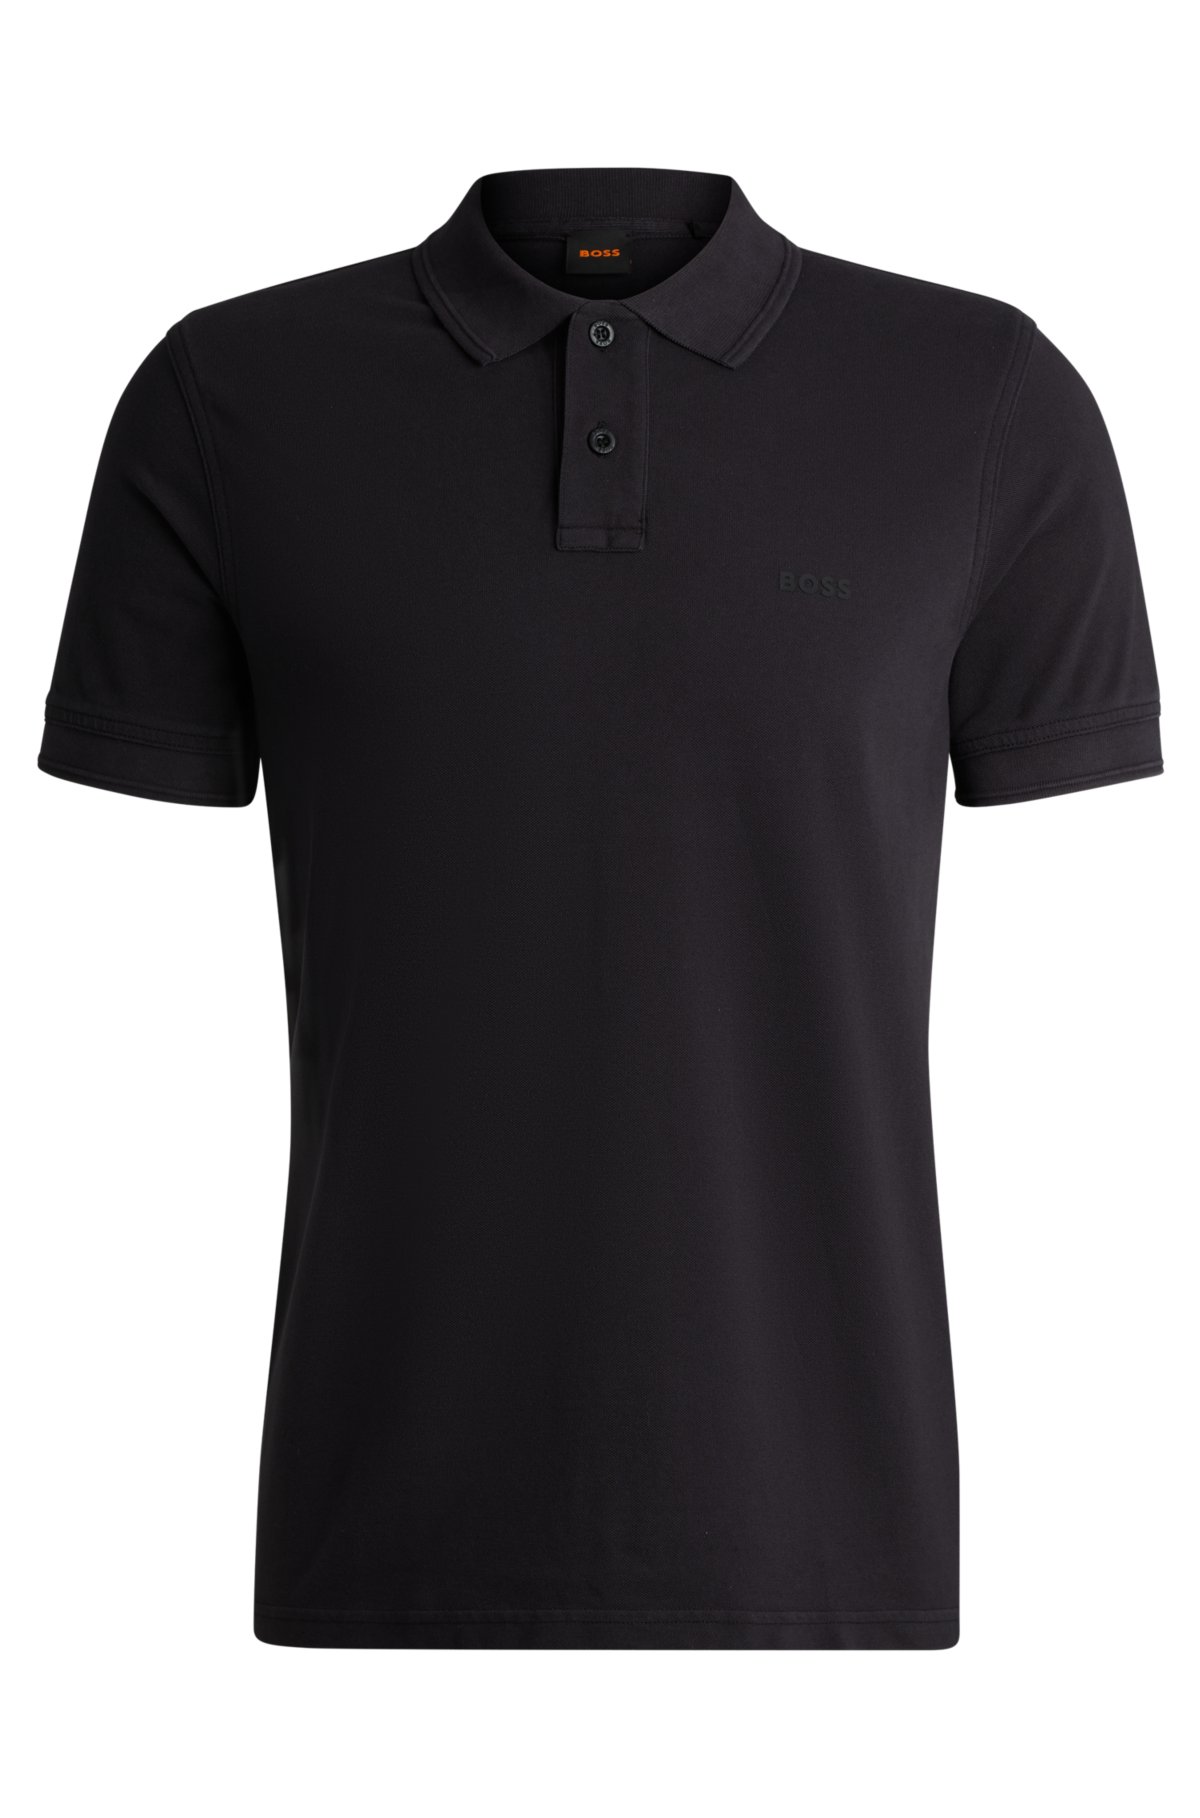 Cotton-piqué polo shirt with logo print, Black